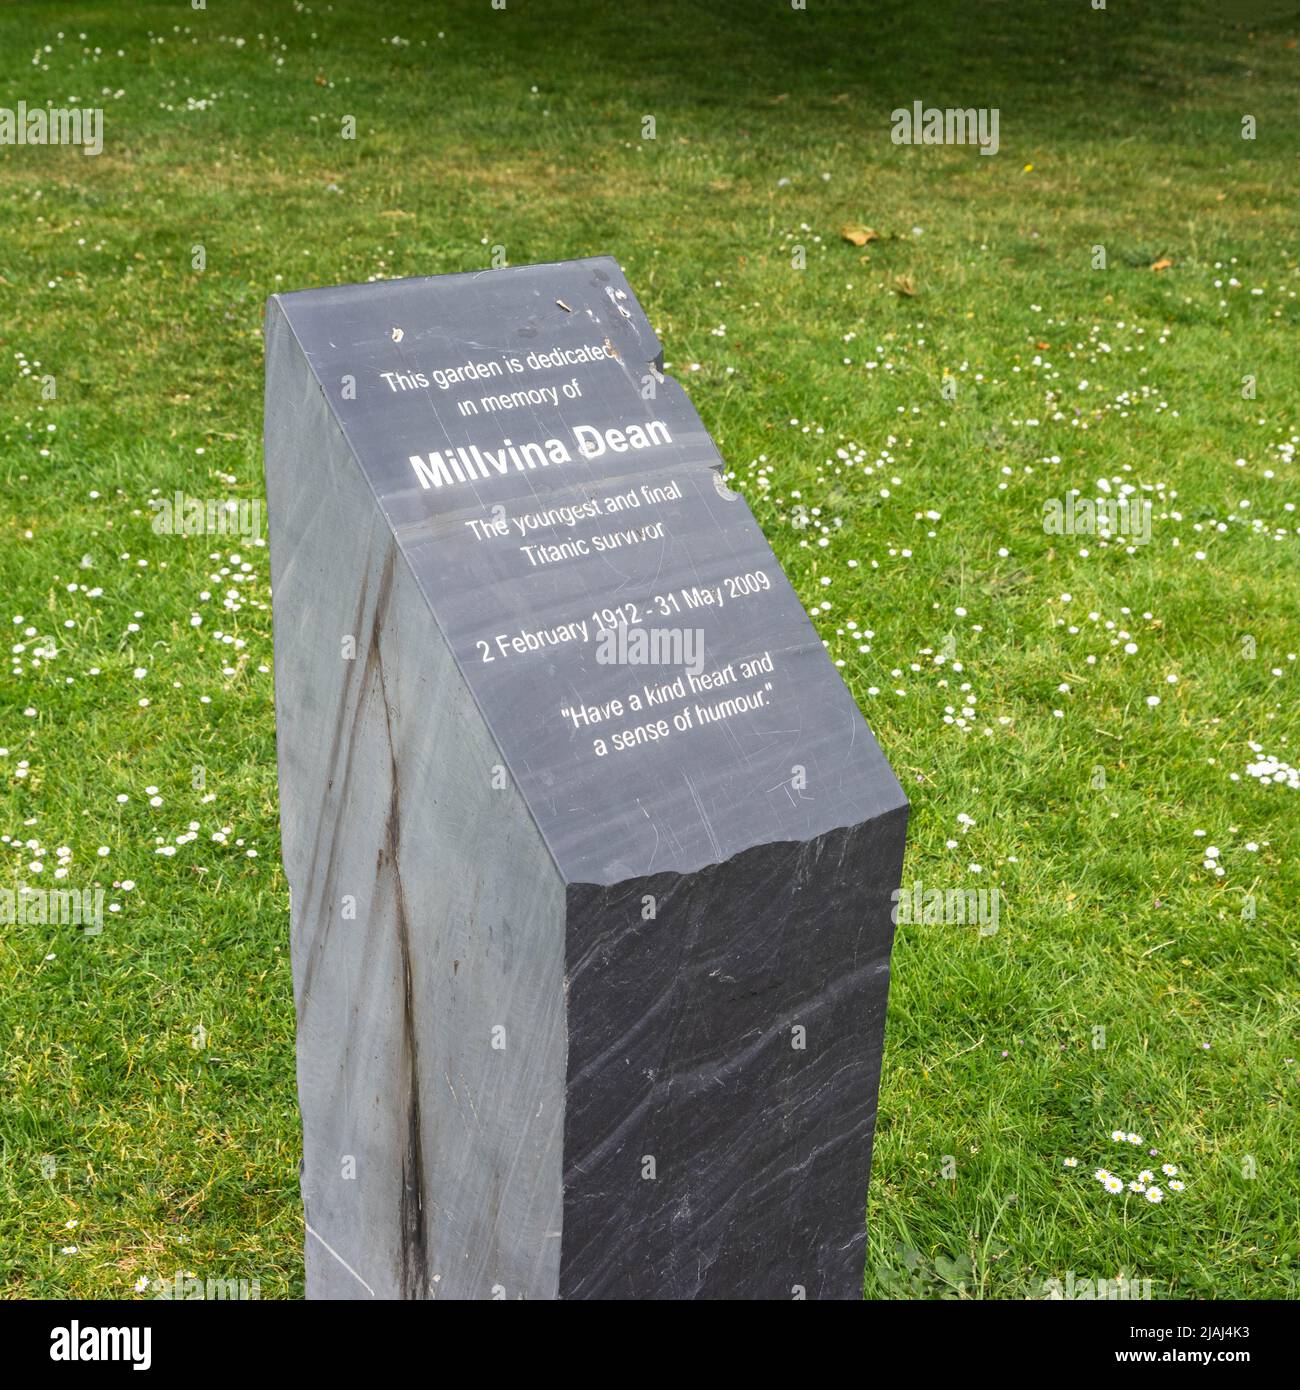 Piedra conmemorativa para la última superviviente de Millvina Dean del desastre Titanic en el Millvina Dean Memorial Garden en Southampton, Hampshire, Inglaterra, Reino Unido Foto de stock